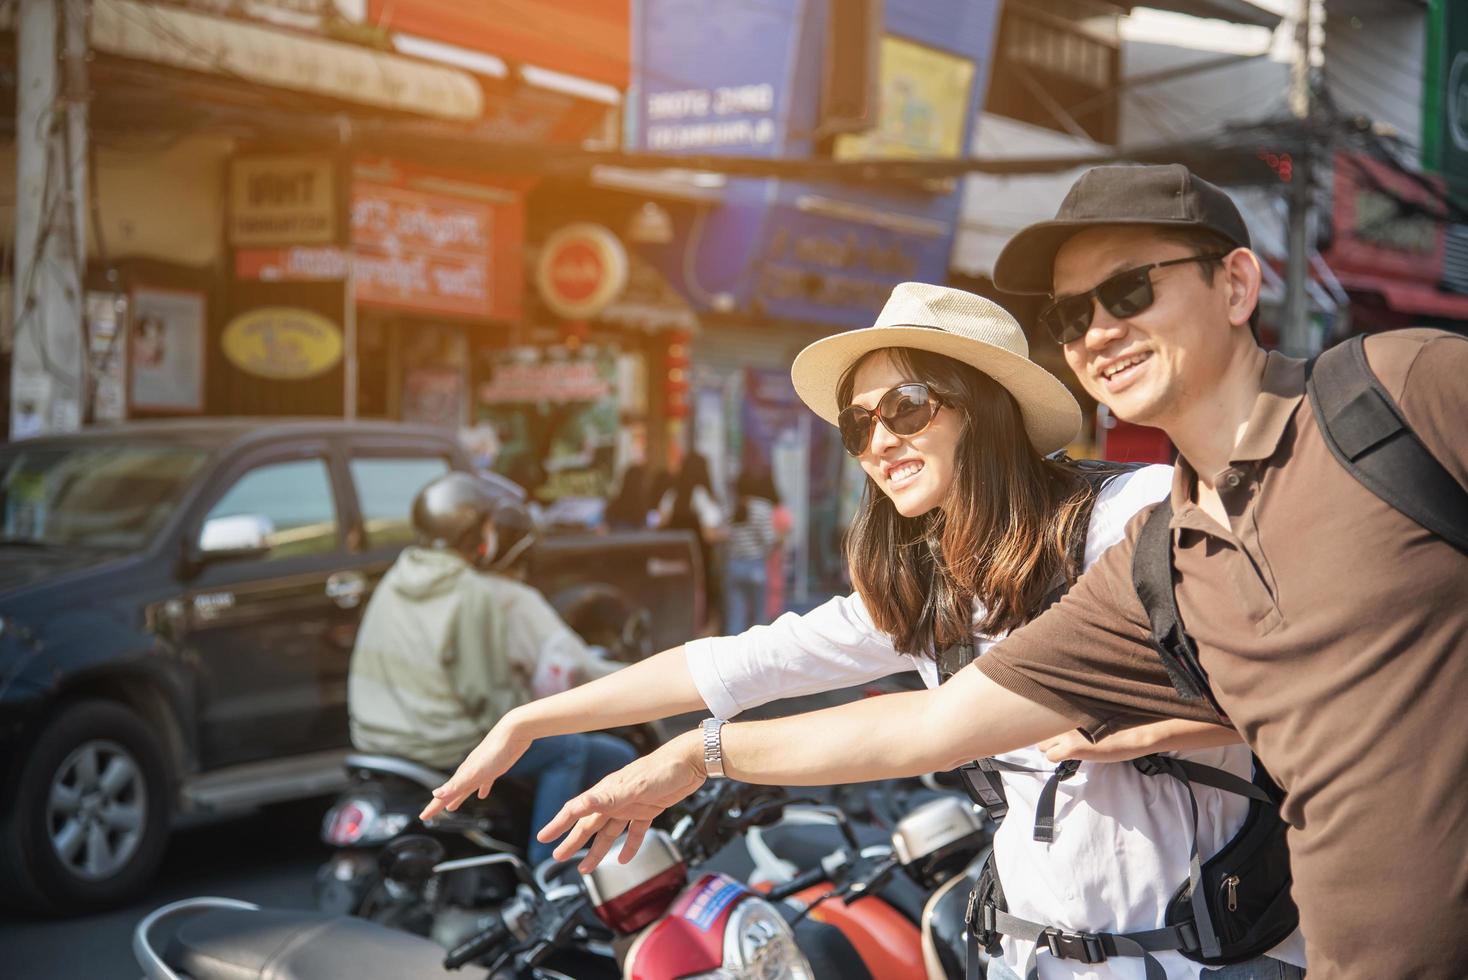 turista de casal de mochila asiática segurando o mapa da cidade atravessando a estrada - conceito de estilo de vida de férias de pessoas de viagem foto